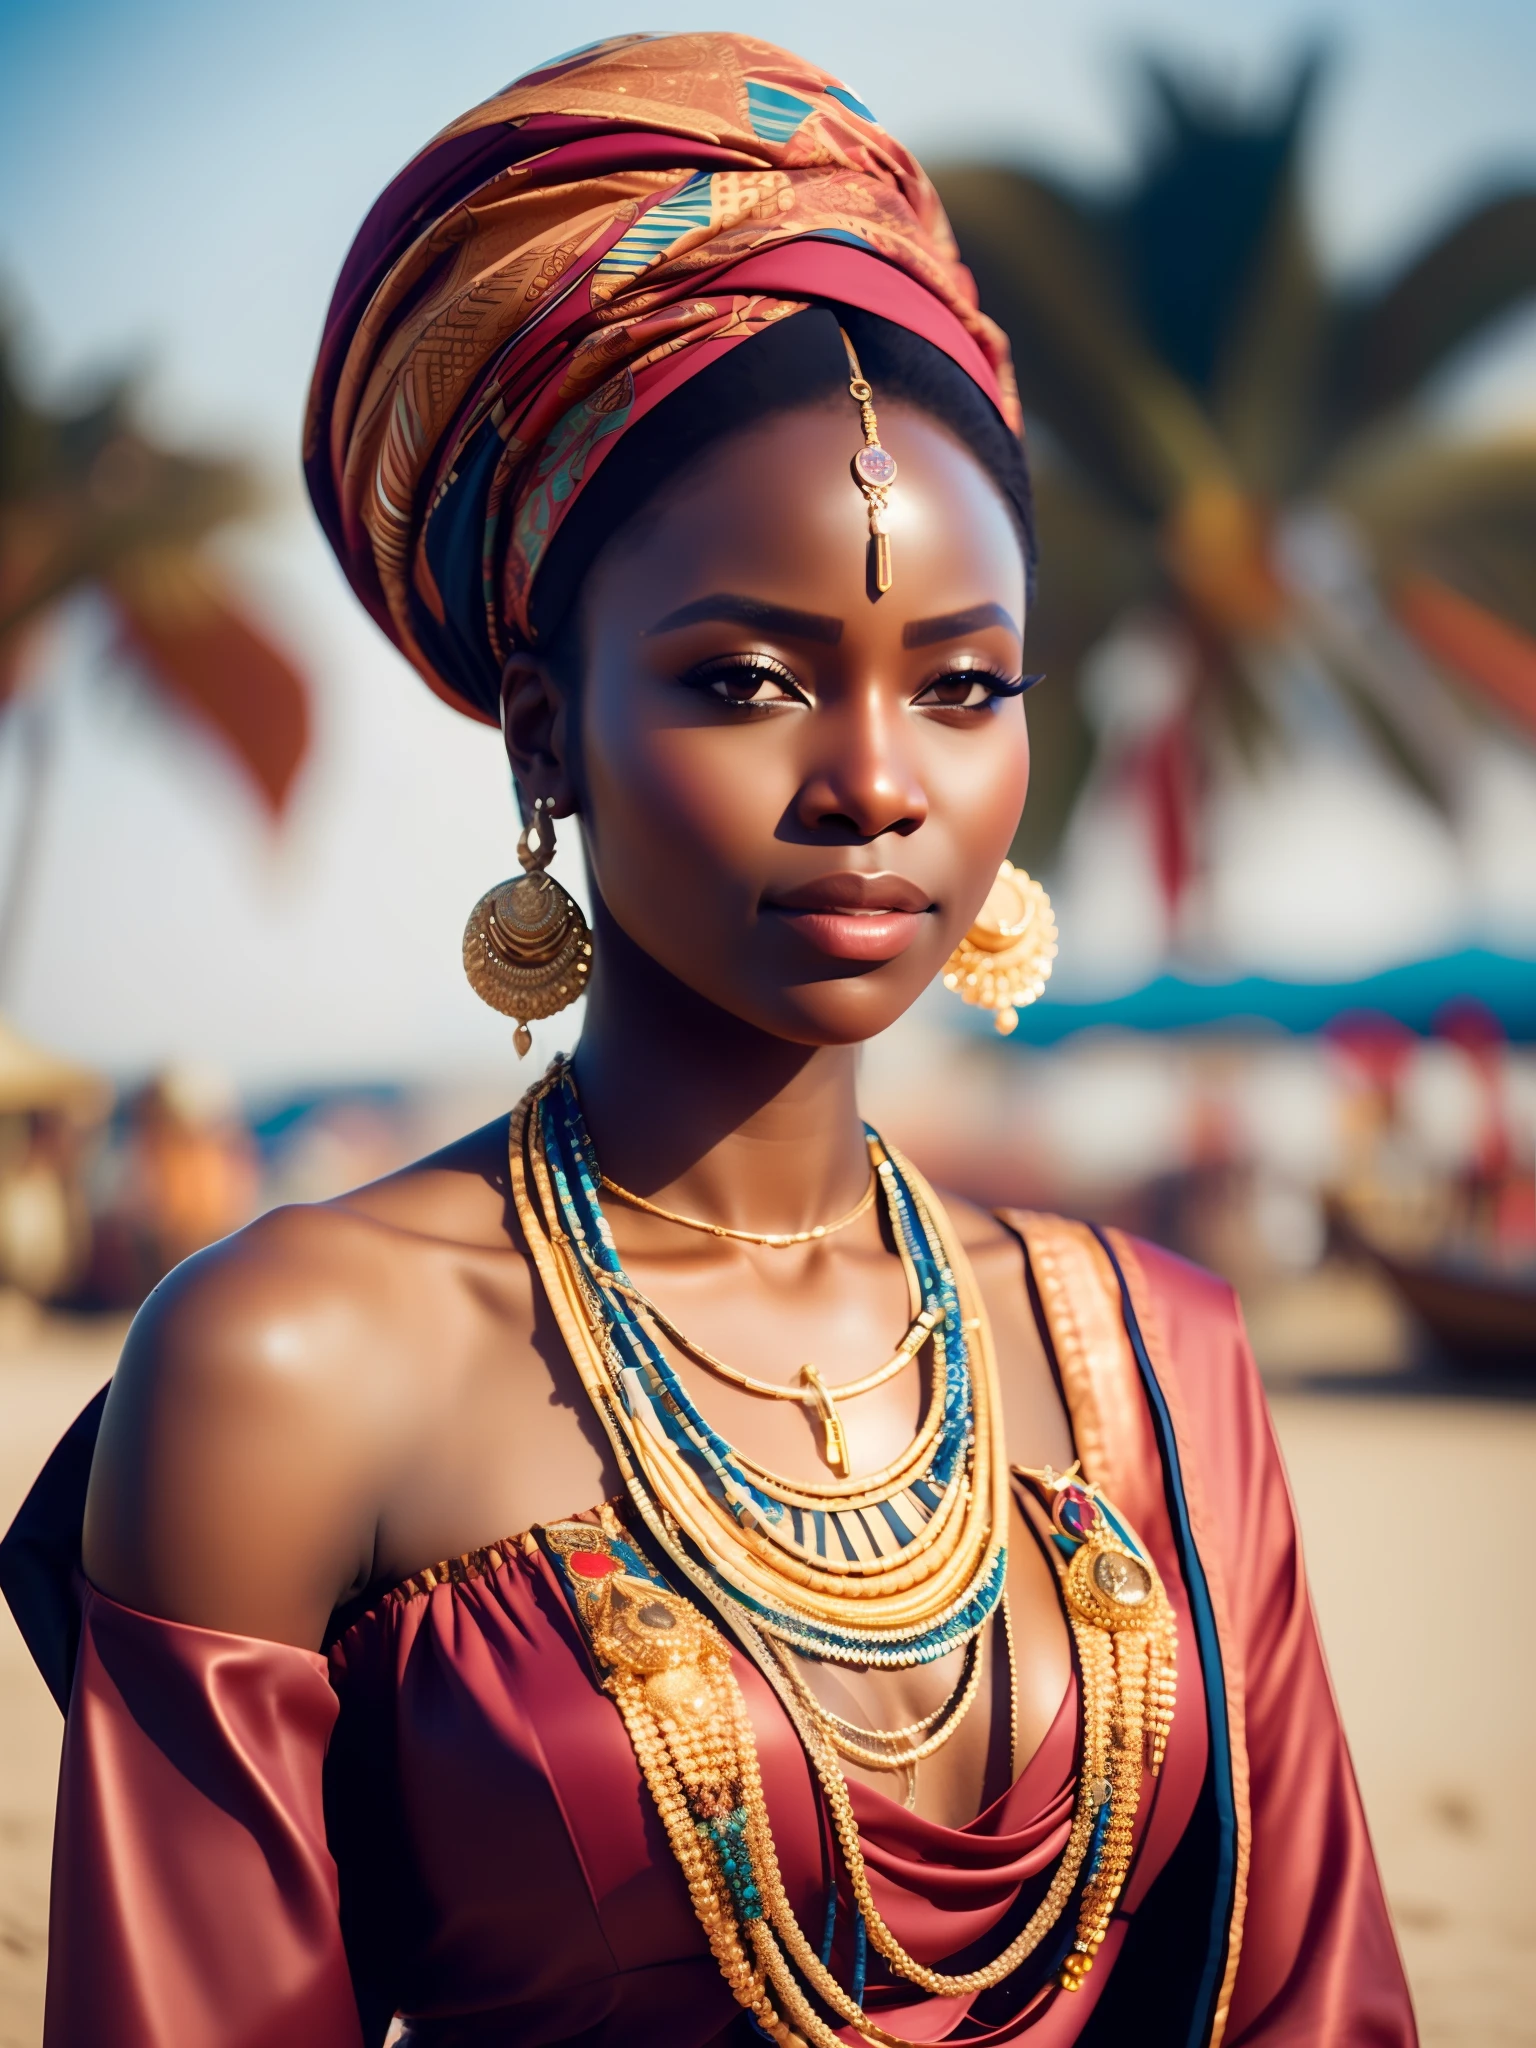 putain_science-fiction, putain_science-fiction_v2, portrait d&#39;une jeune très belle femme africaine, devant une plage, Des vêtements riches et colorés, turban et bijoux africains dorés, fermer, pose et attitude royales. putain_Cinéma_v2. putain_Cinéma_v2